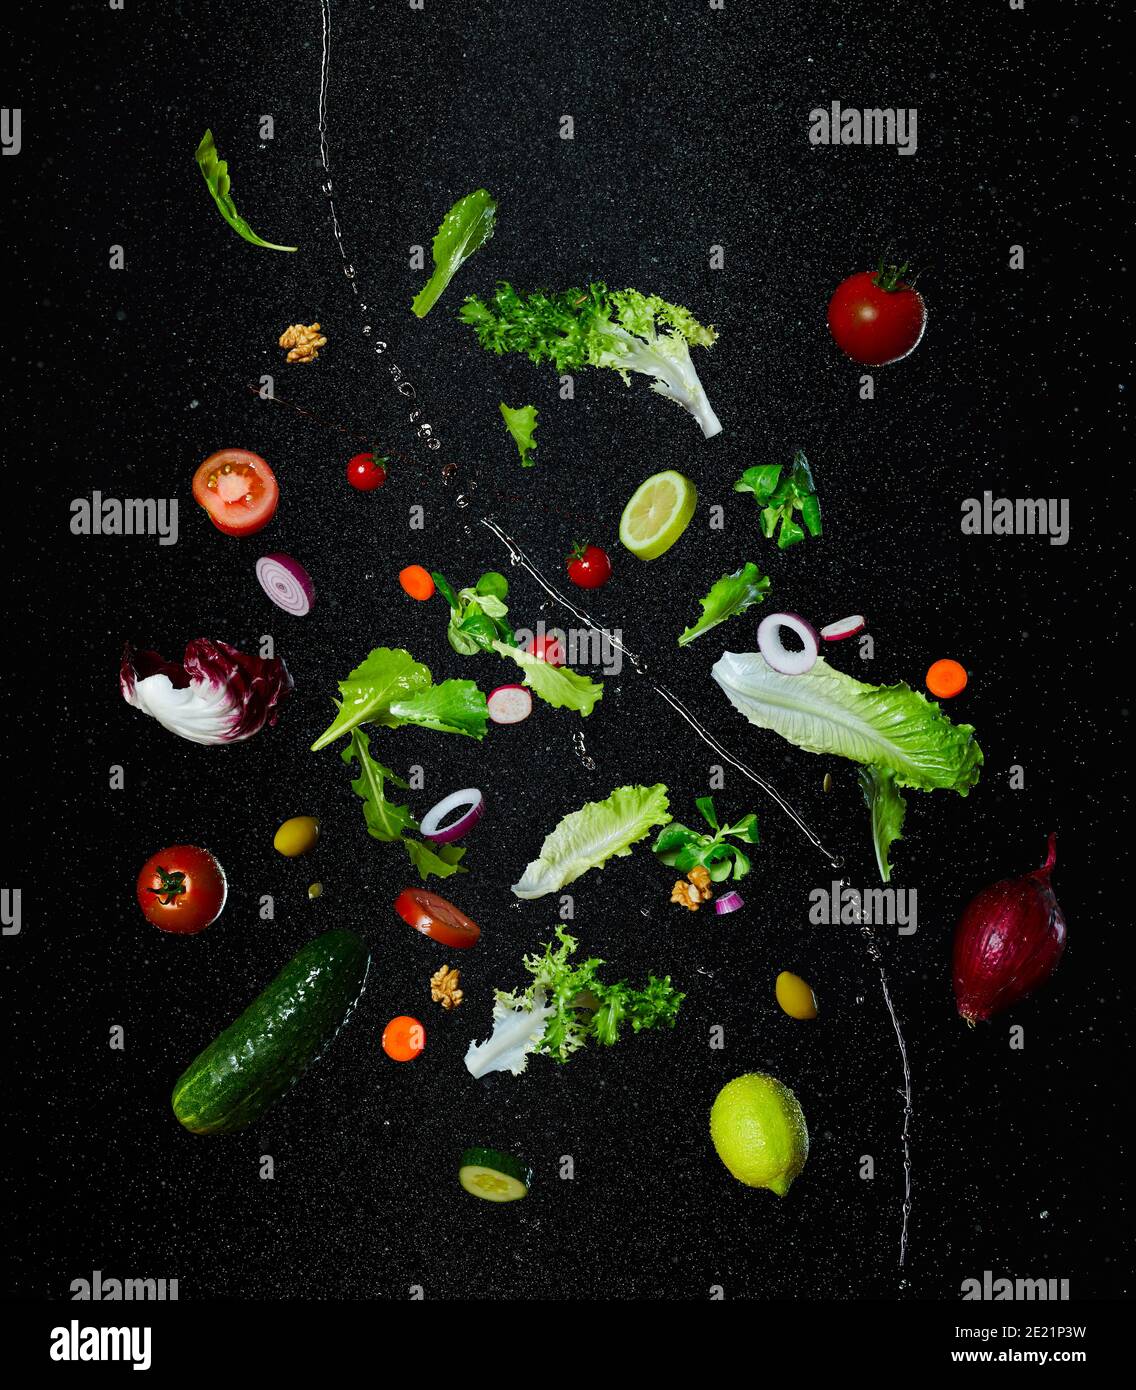 Fotografia di vita morta di verdure volanti Foto Stock